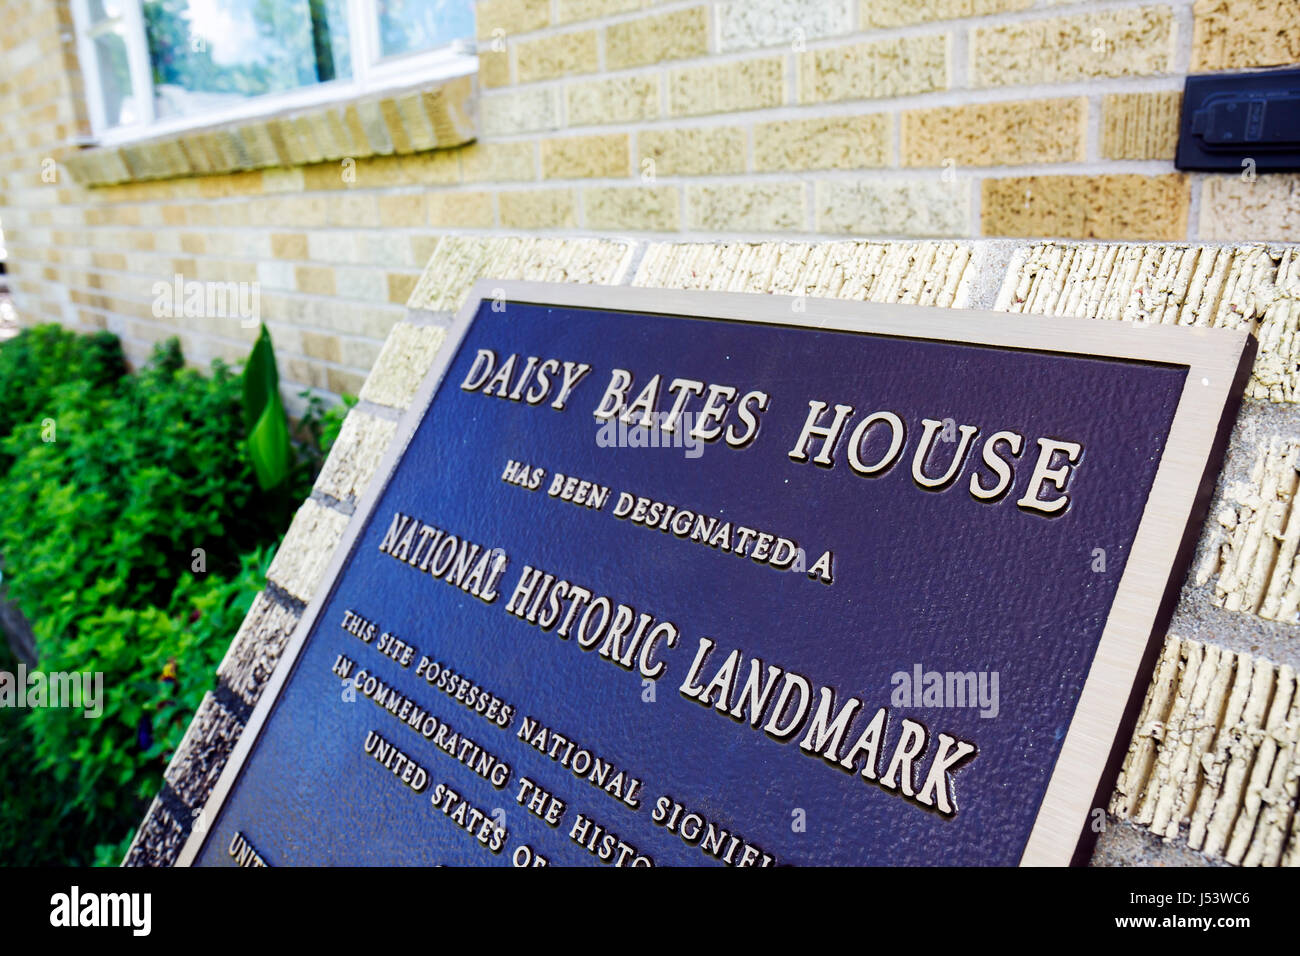 Little Rock Arkansas, Daisy Bates, leader dei diritti civili 1957, marcatore, metallo, casa, casa case casa case residenza corsa, 1957 crisi di desegregazione, Black His Foto Stock